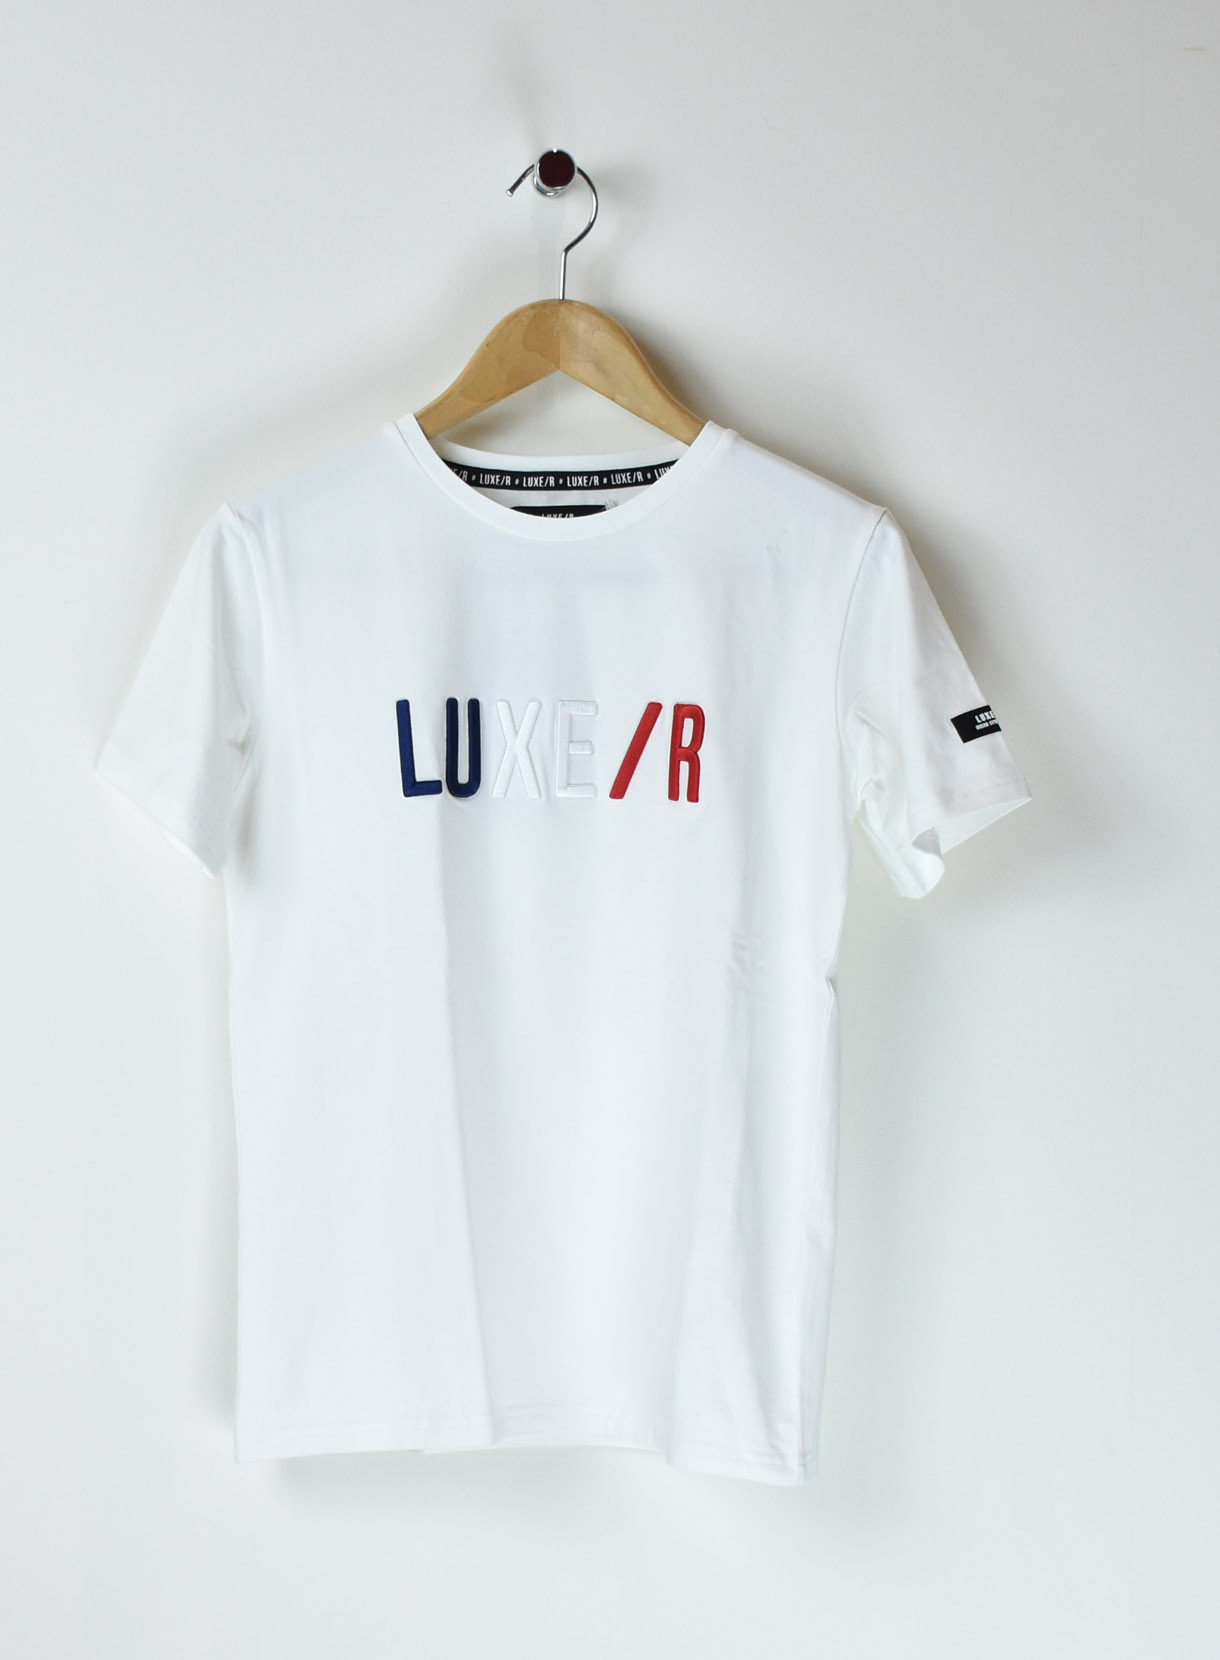 Fトリコロール３d刺繍tシャツ リレーション公式ホームページ